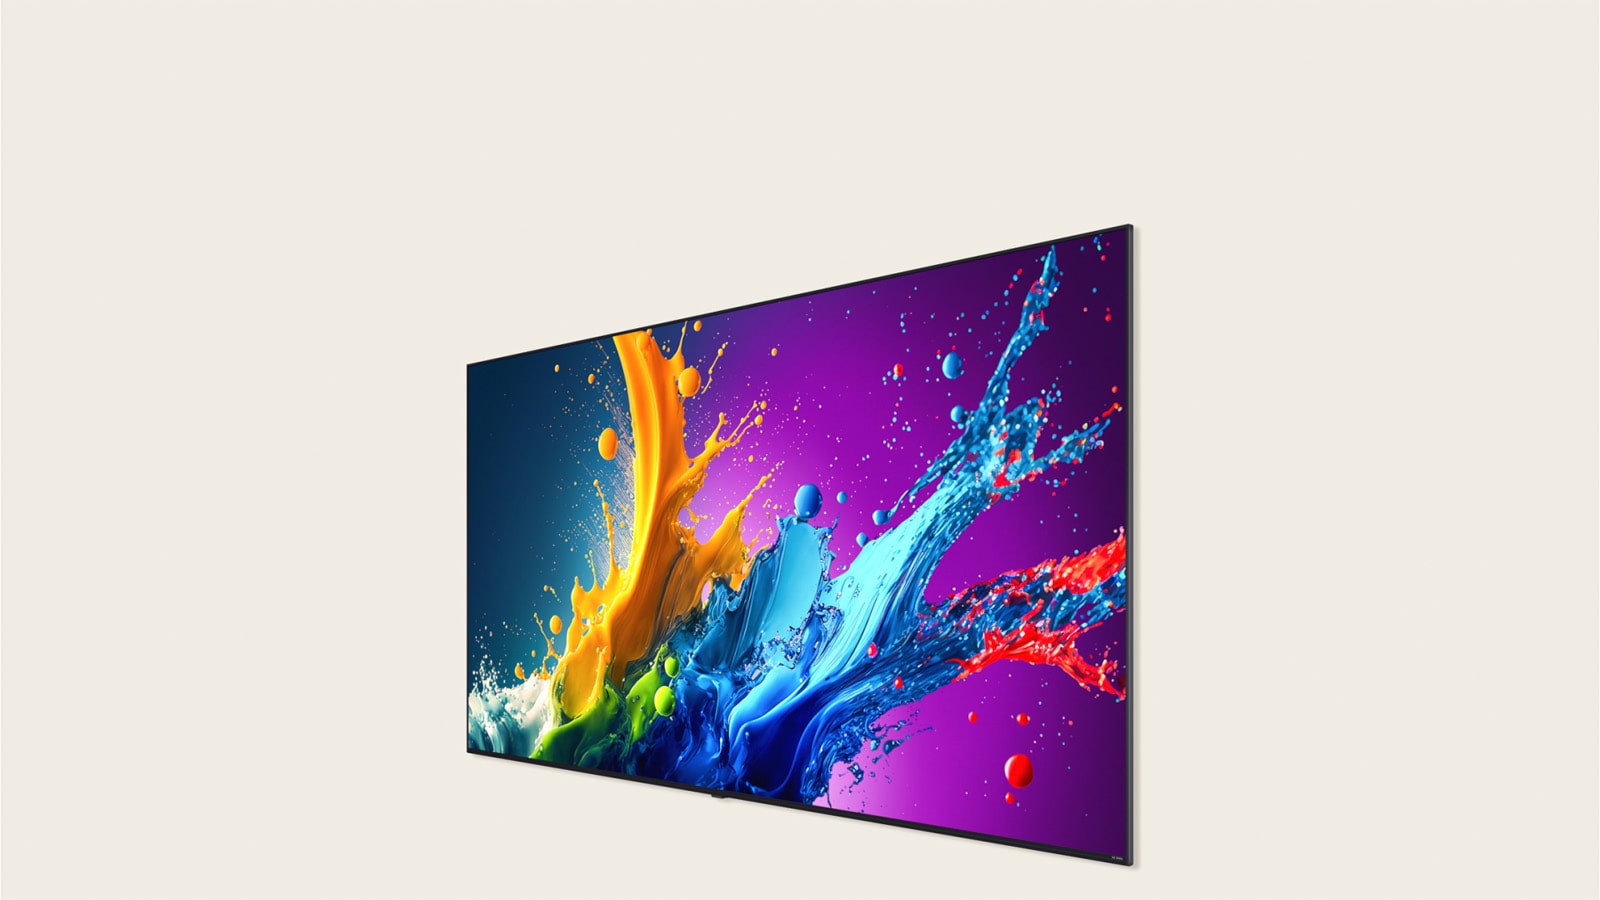 LG QNED80 螢幕顯示色彩繽紛的藝術作品。